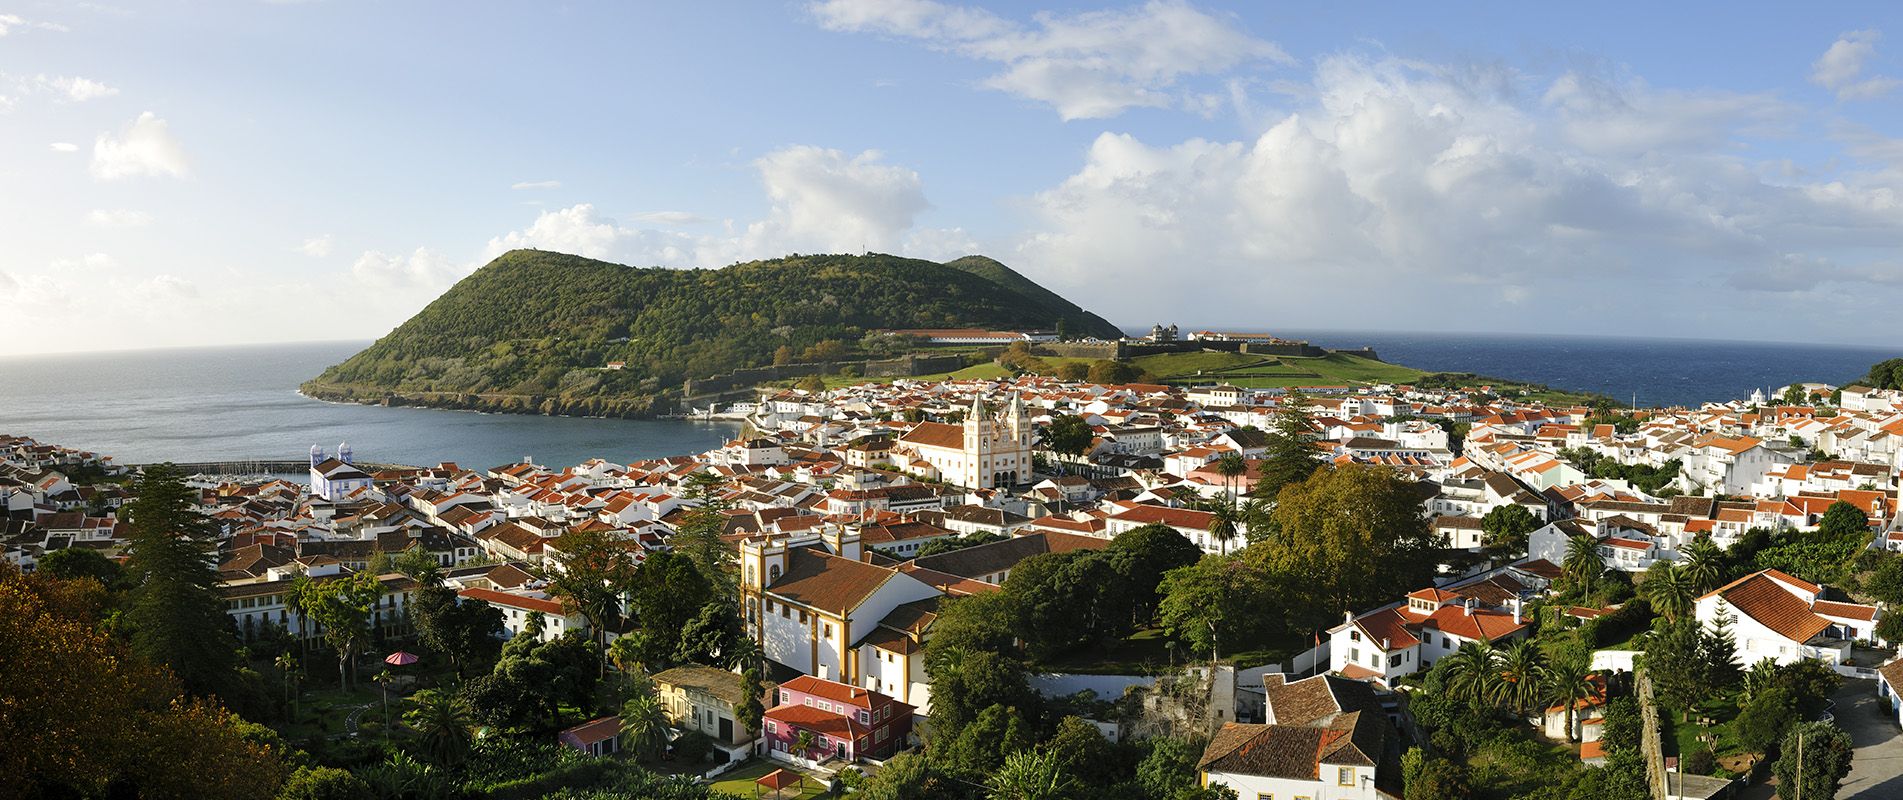 Portugal,  Azores Archipelago